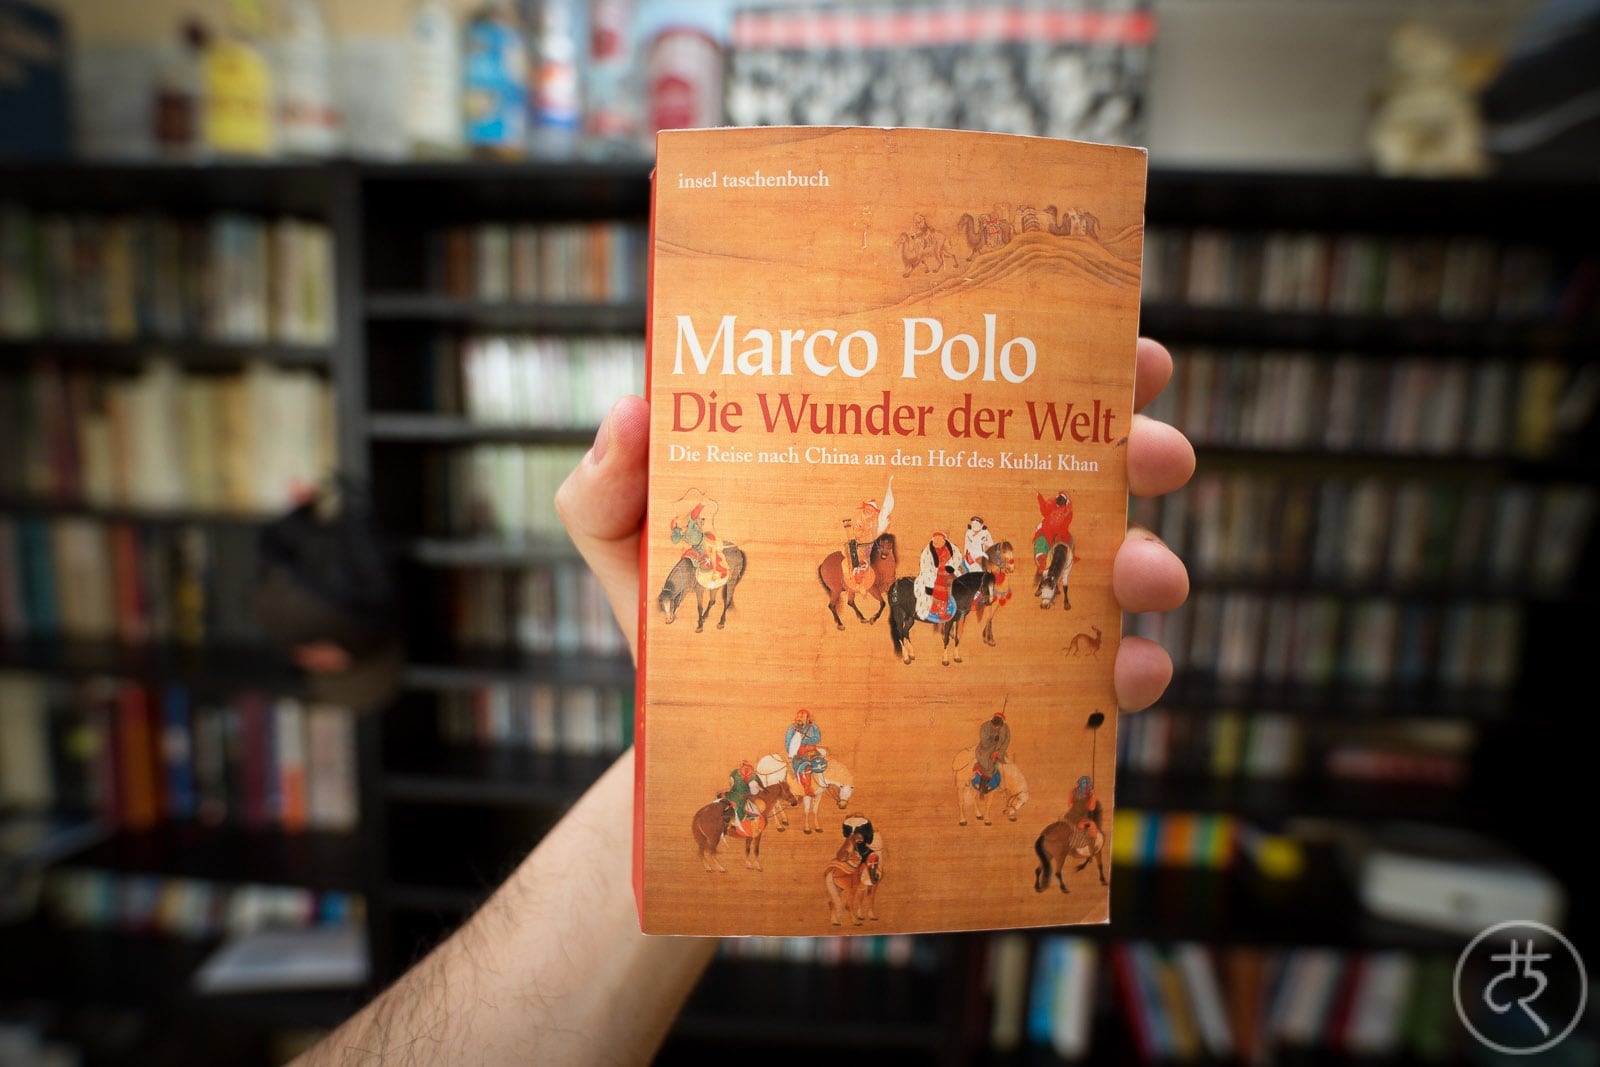 Marco Polo's "Description Of The World"